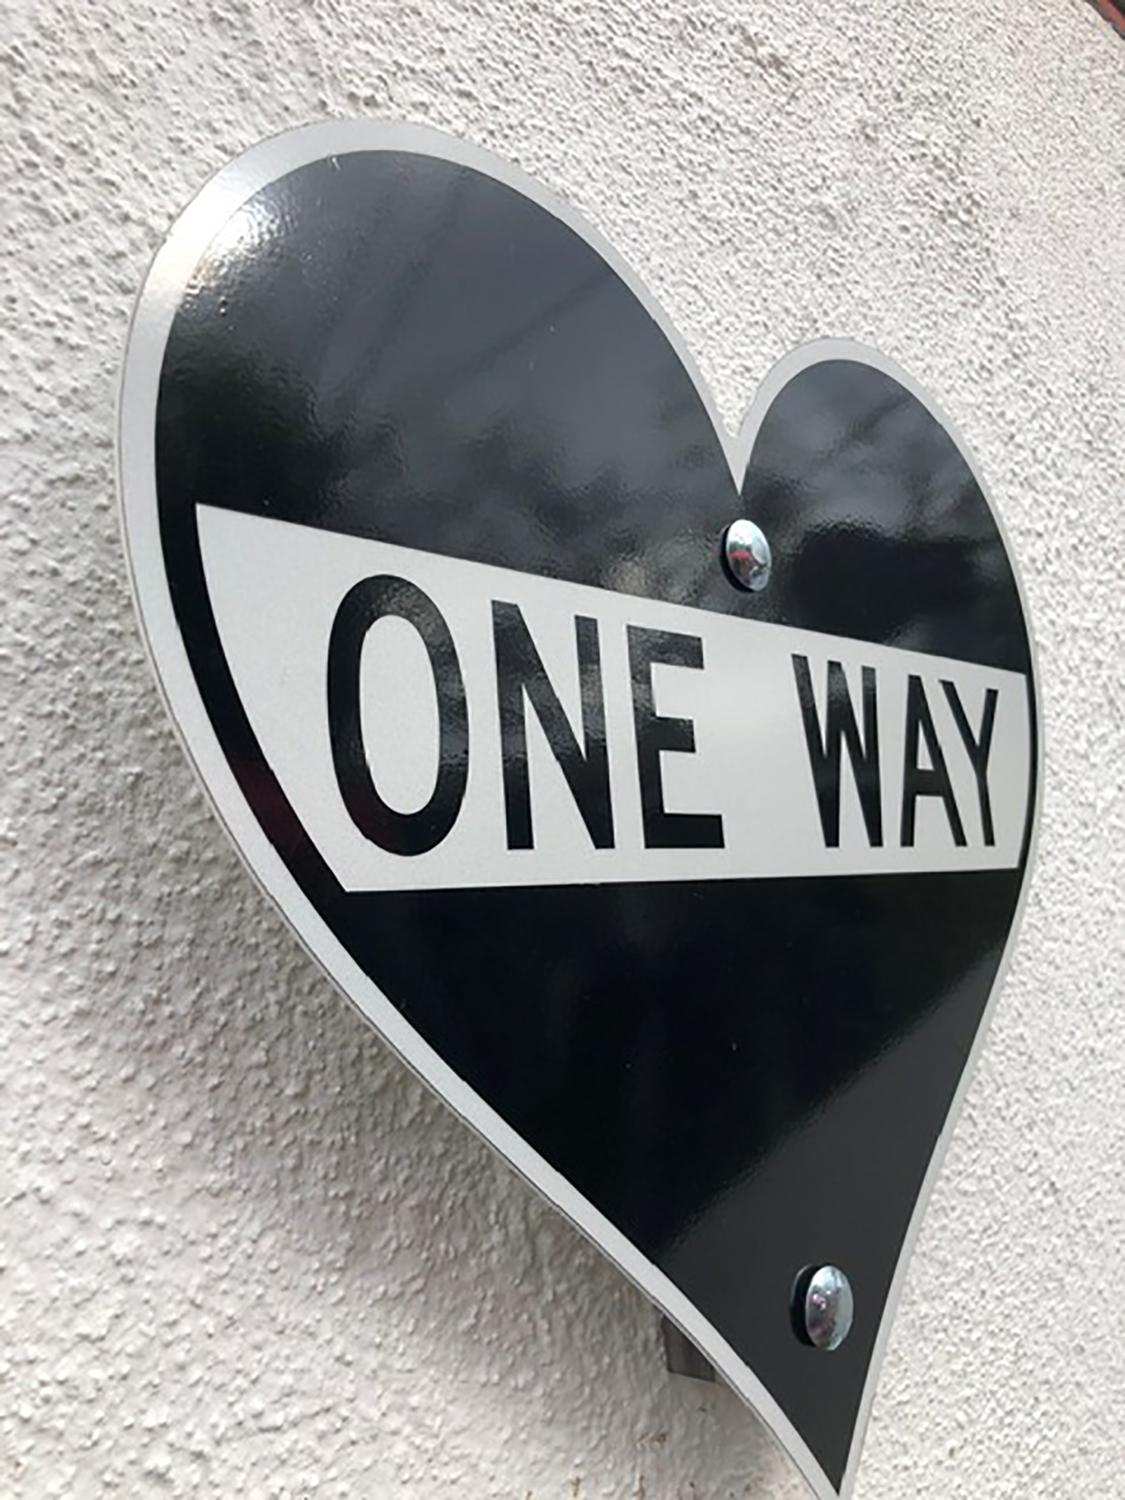 oneway street sign